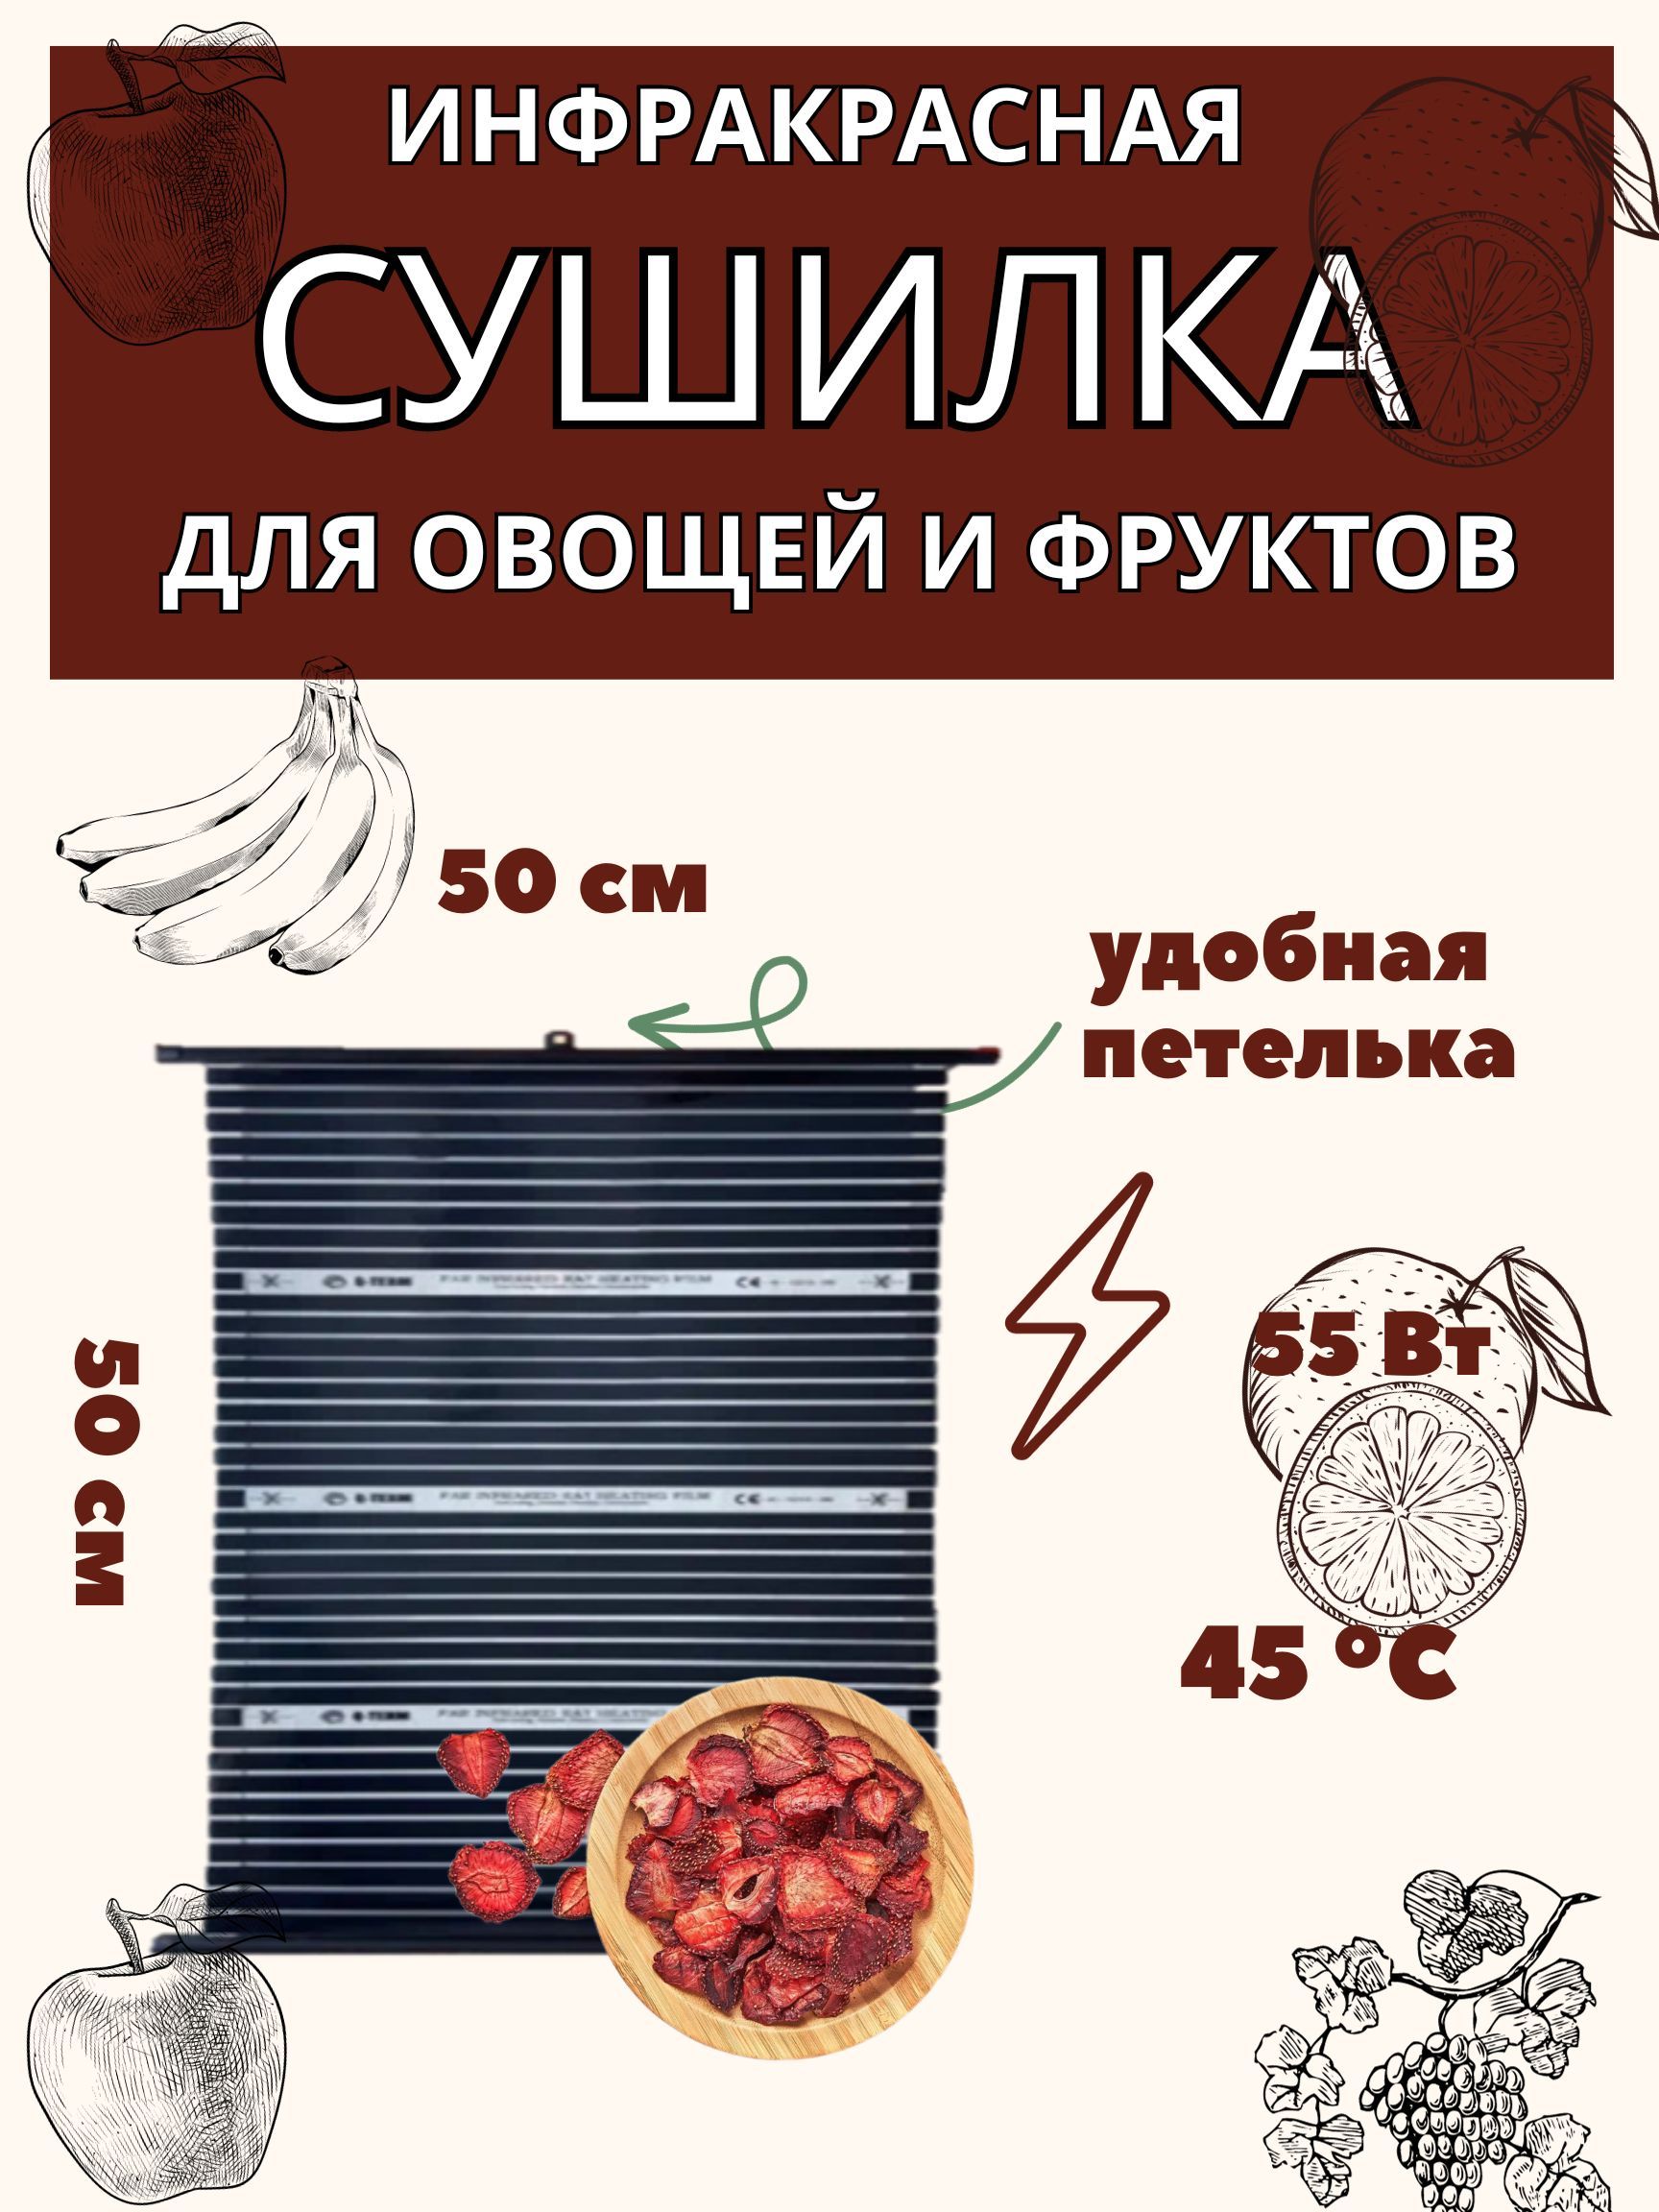 Сушилка для овощей и фруктов Элвин СУ-1У